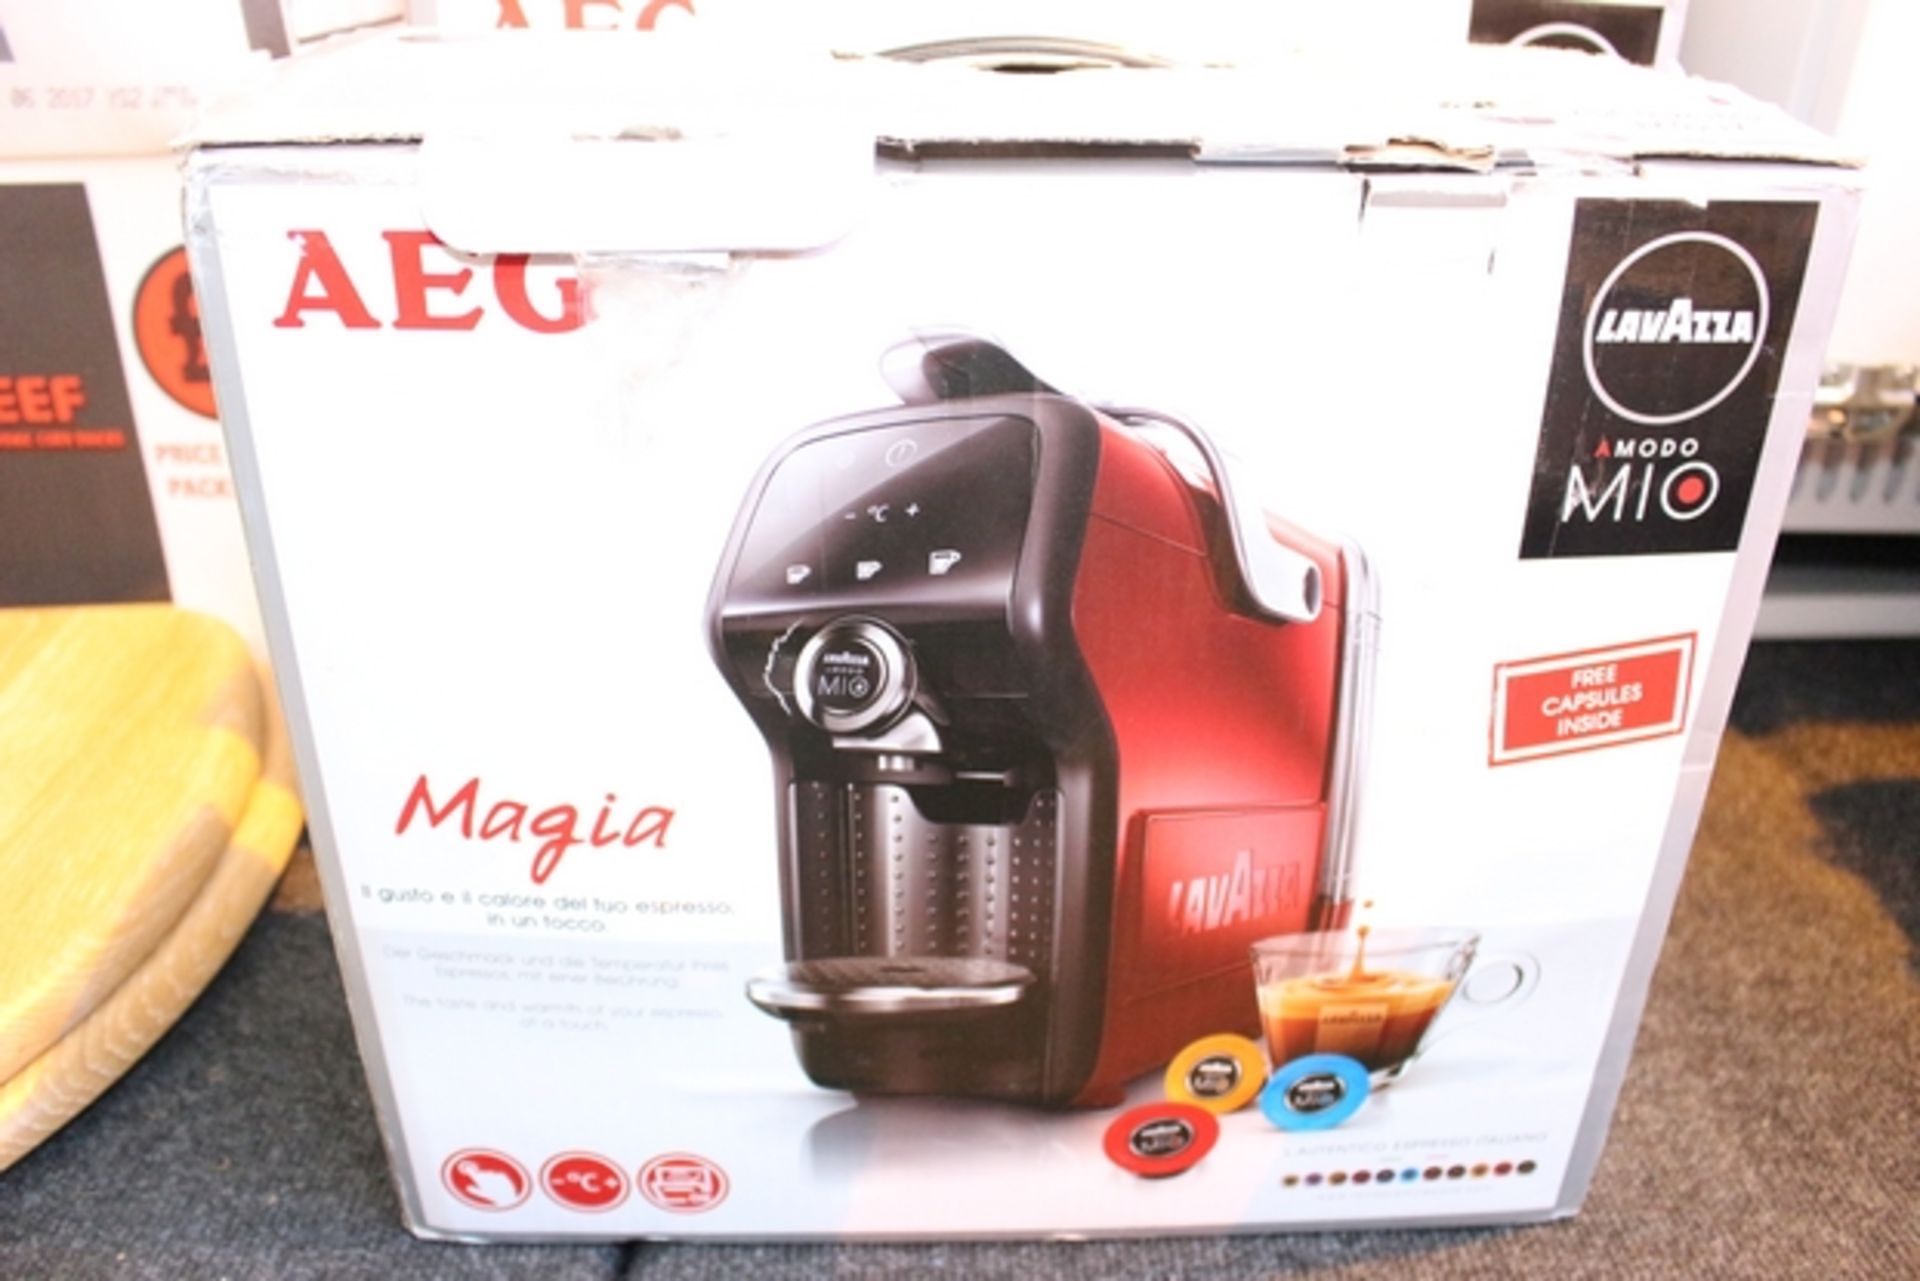 1X BOXED AEG MAGIA LAVAZZA AMODO MIO ESPRESSO COFFEE MACHINE RRP £100 (ADC-09241667) (17/05/17)